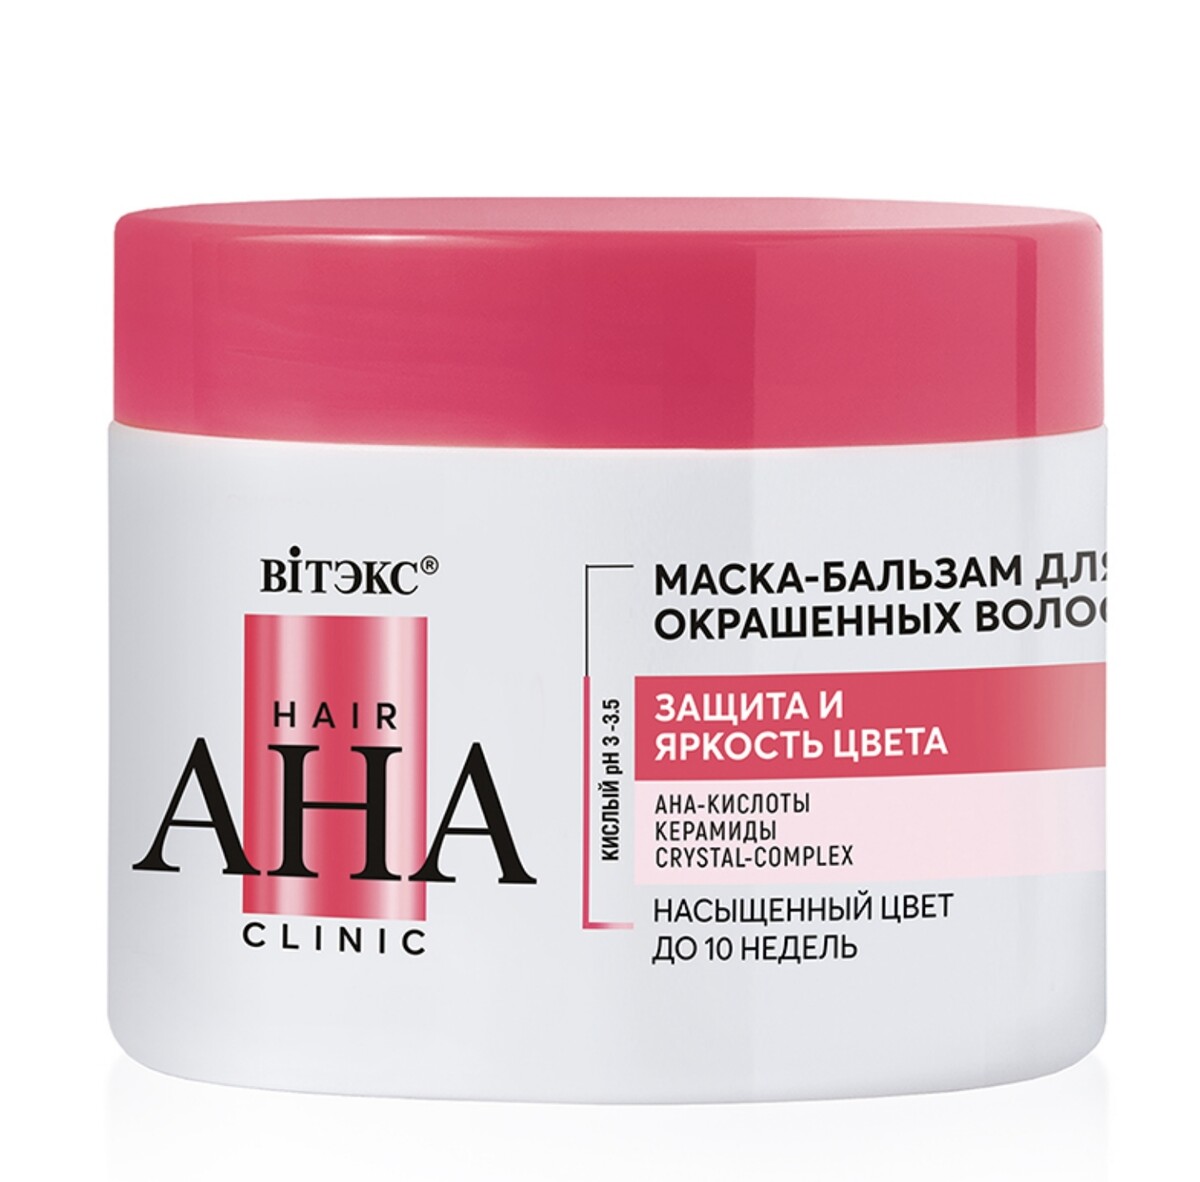 Hair aha clinic маска-бальзам для окрашенных волос защита и яркость цвета 300мл несмываемая сыворотка для окрашенных волос davines minu 150 мл